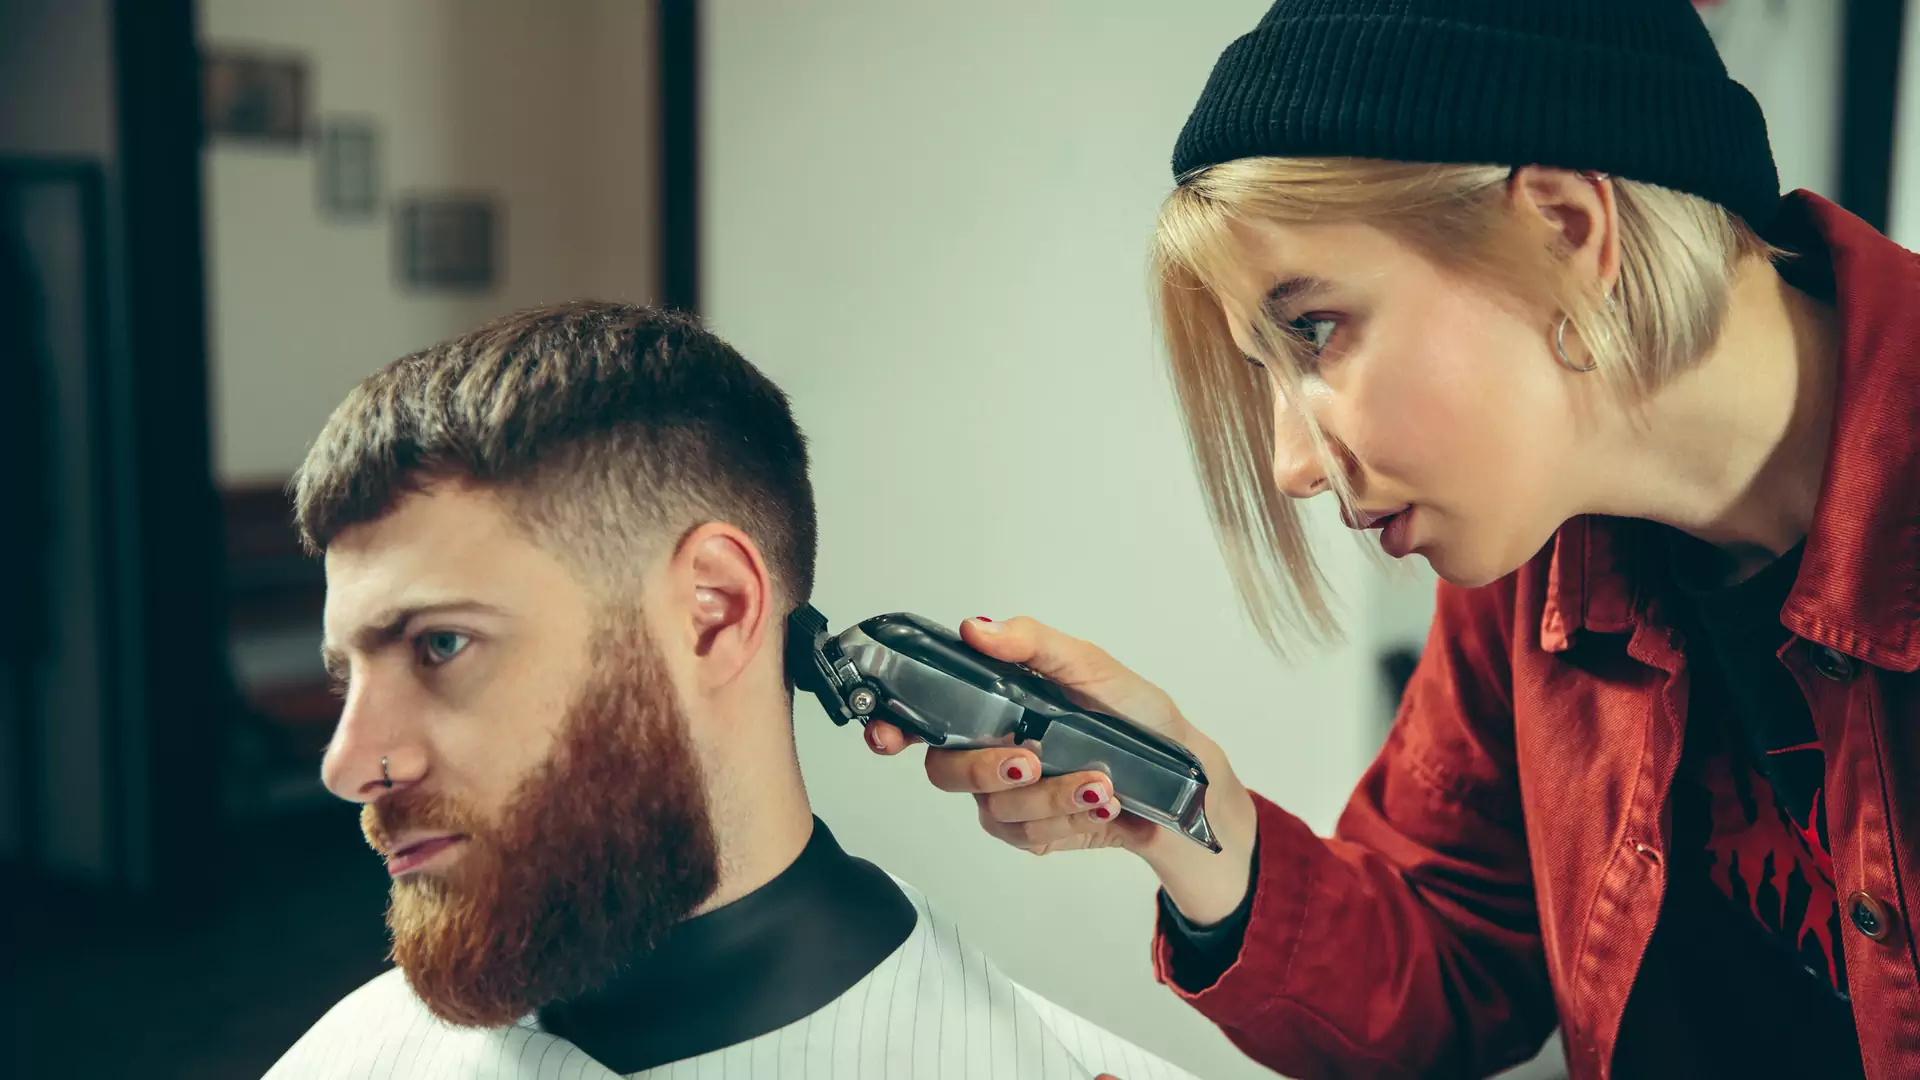 Domowy salon fryzjerski - dzięki tym maszynkom do włosów sam ogarniesz swoją fryzurę